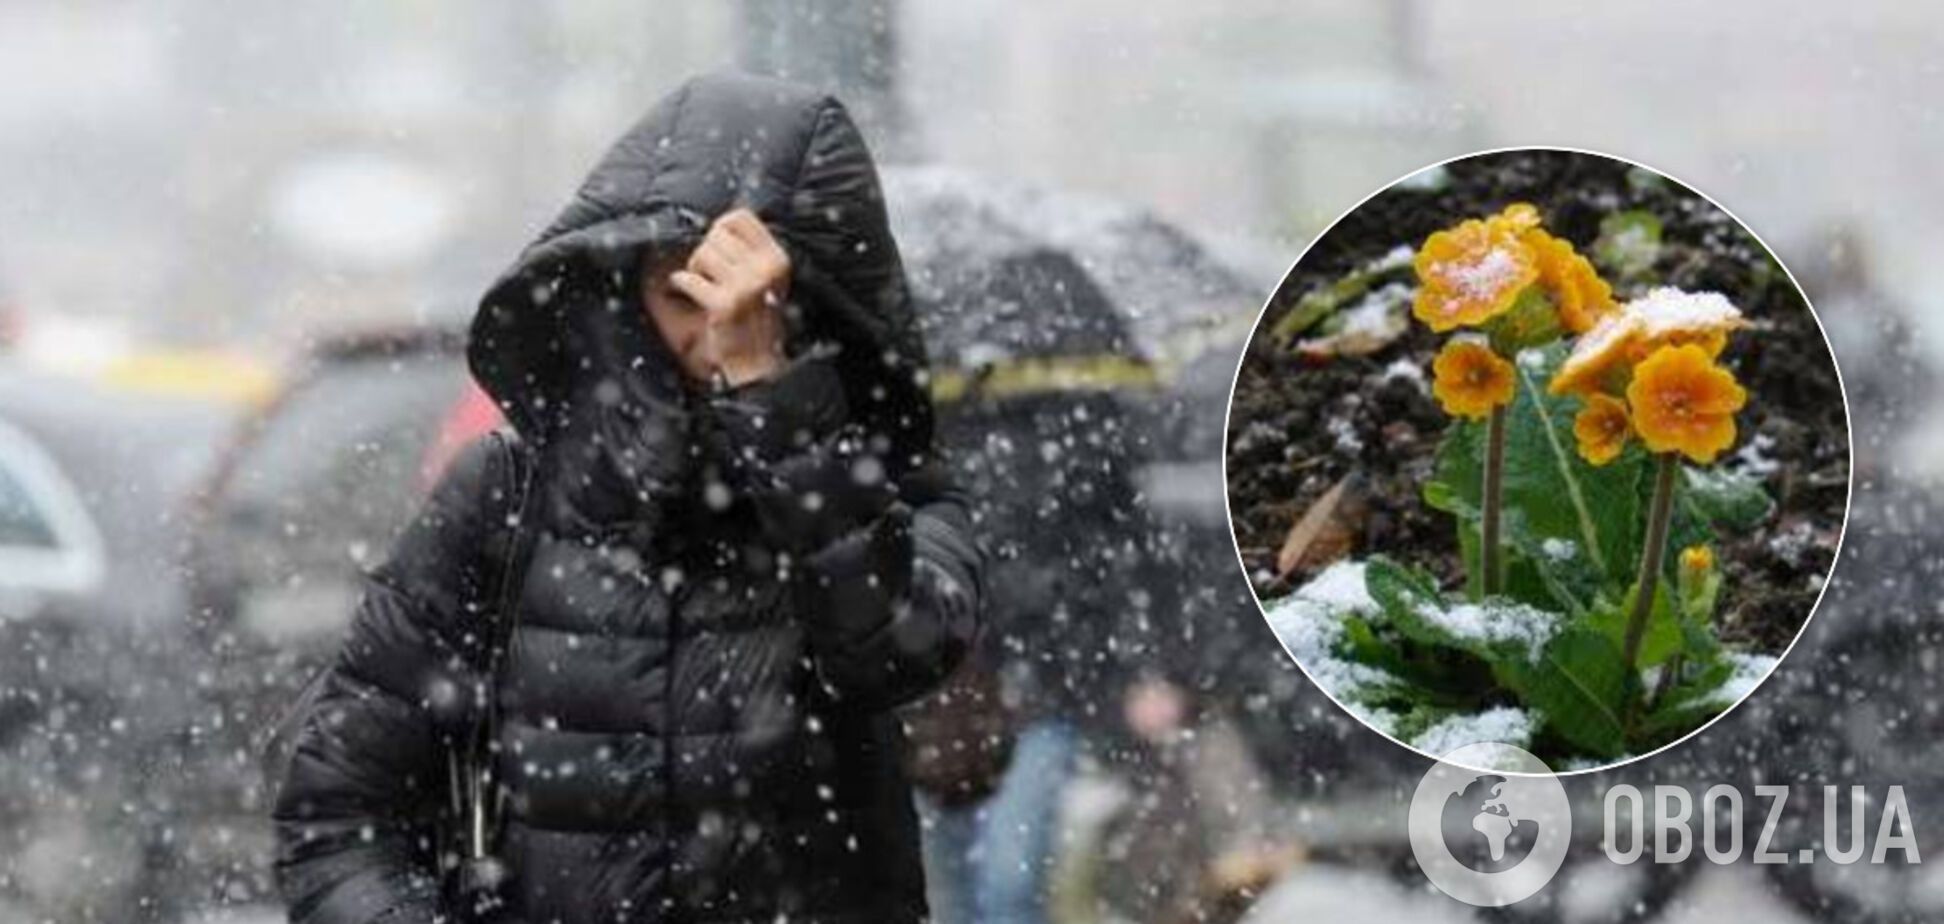 Синоптик уточнила прогноз погоды на выходные в Украине: резко похолодает